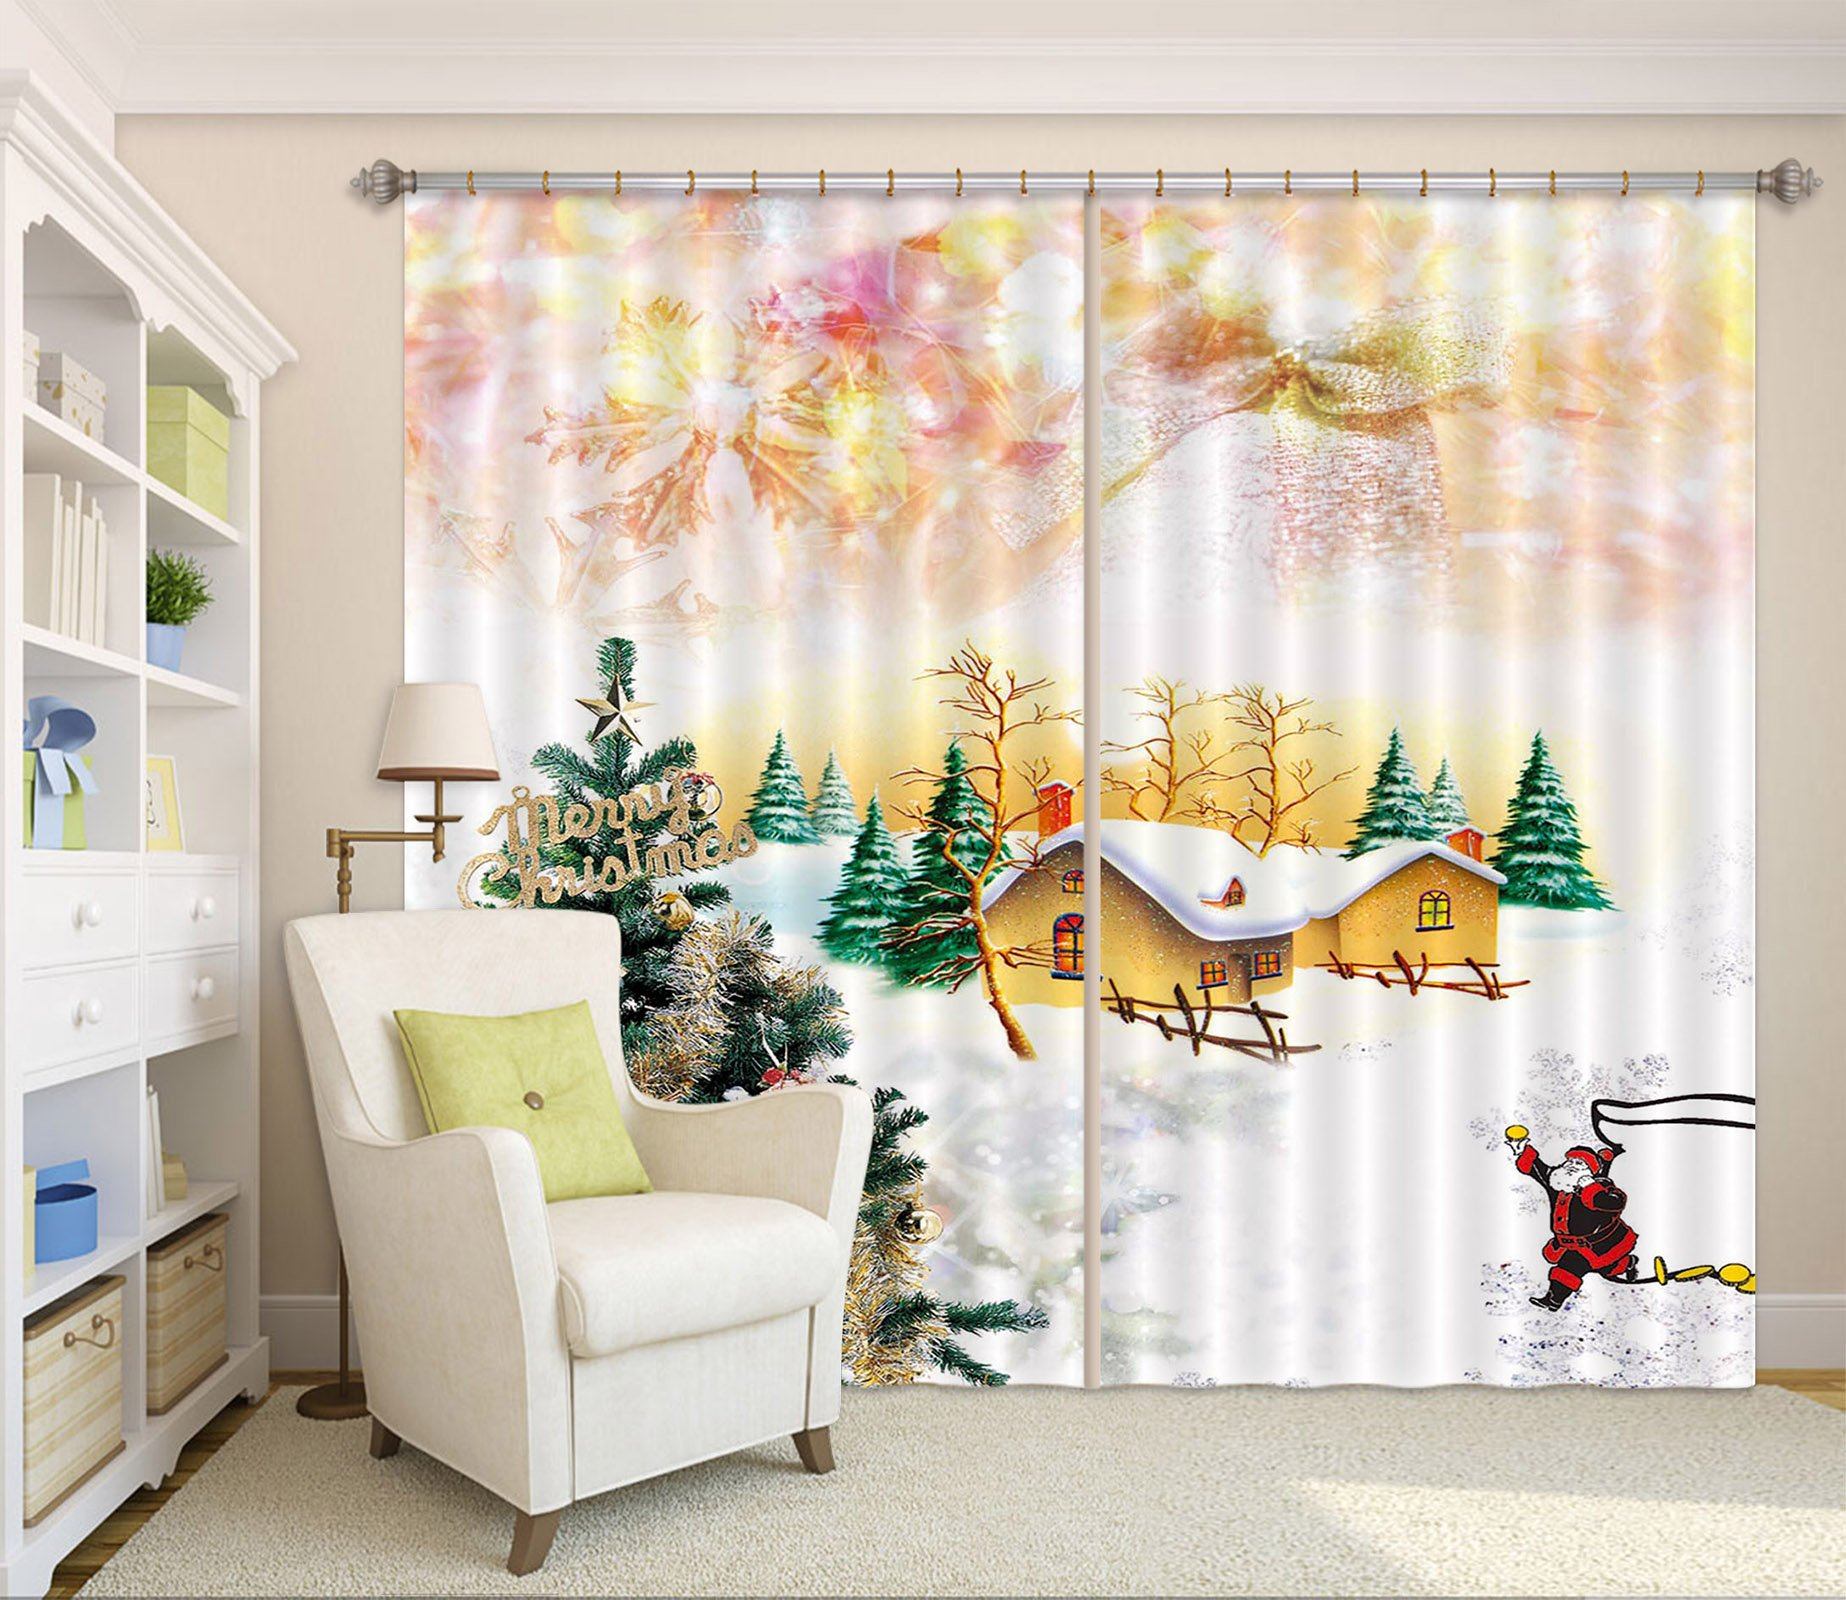 3D Christmas Tree House 41 Curtains Drapes Curtains AJ Creativity Home 